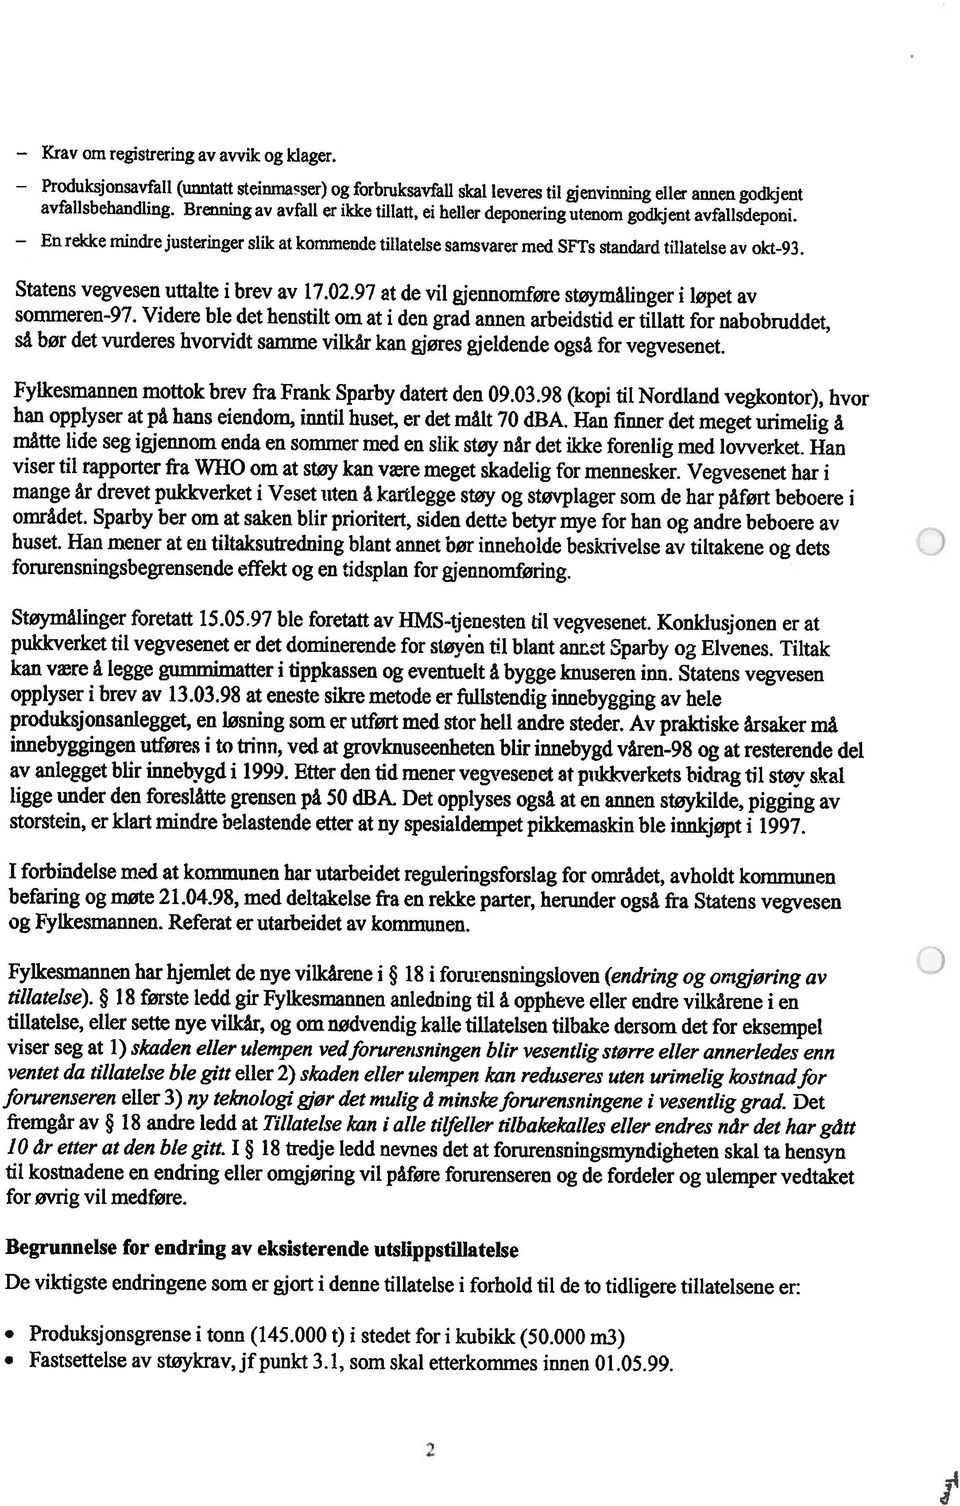 Statens vegvesen uttalte i brev av 17.02.97 at de vil gjennomføre støymålinger i løpet av sommeren-97.